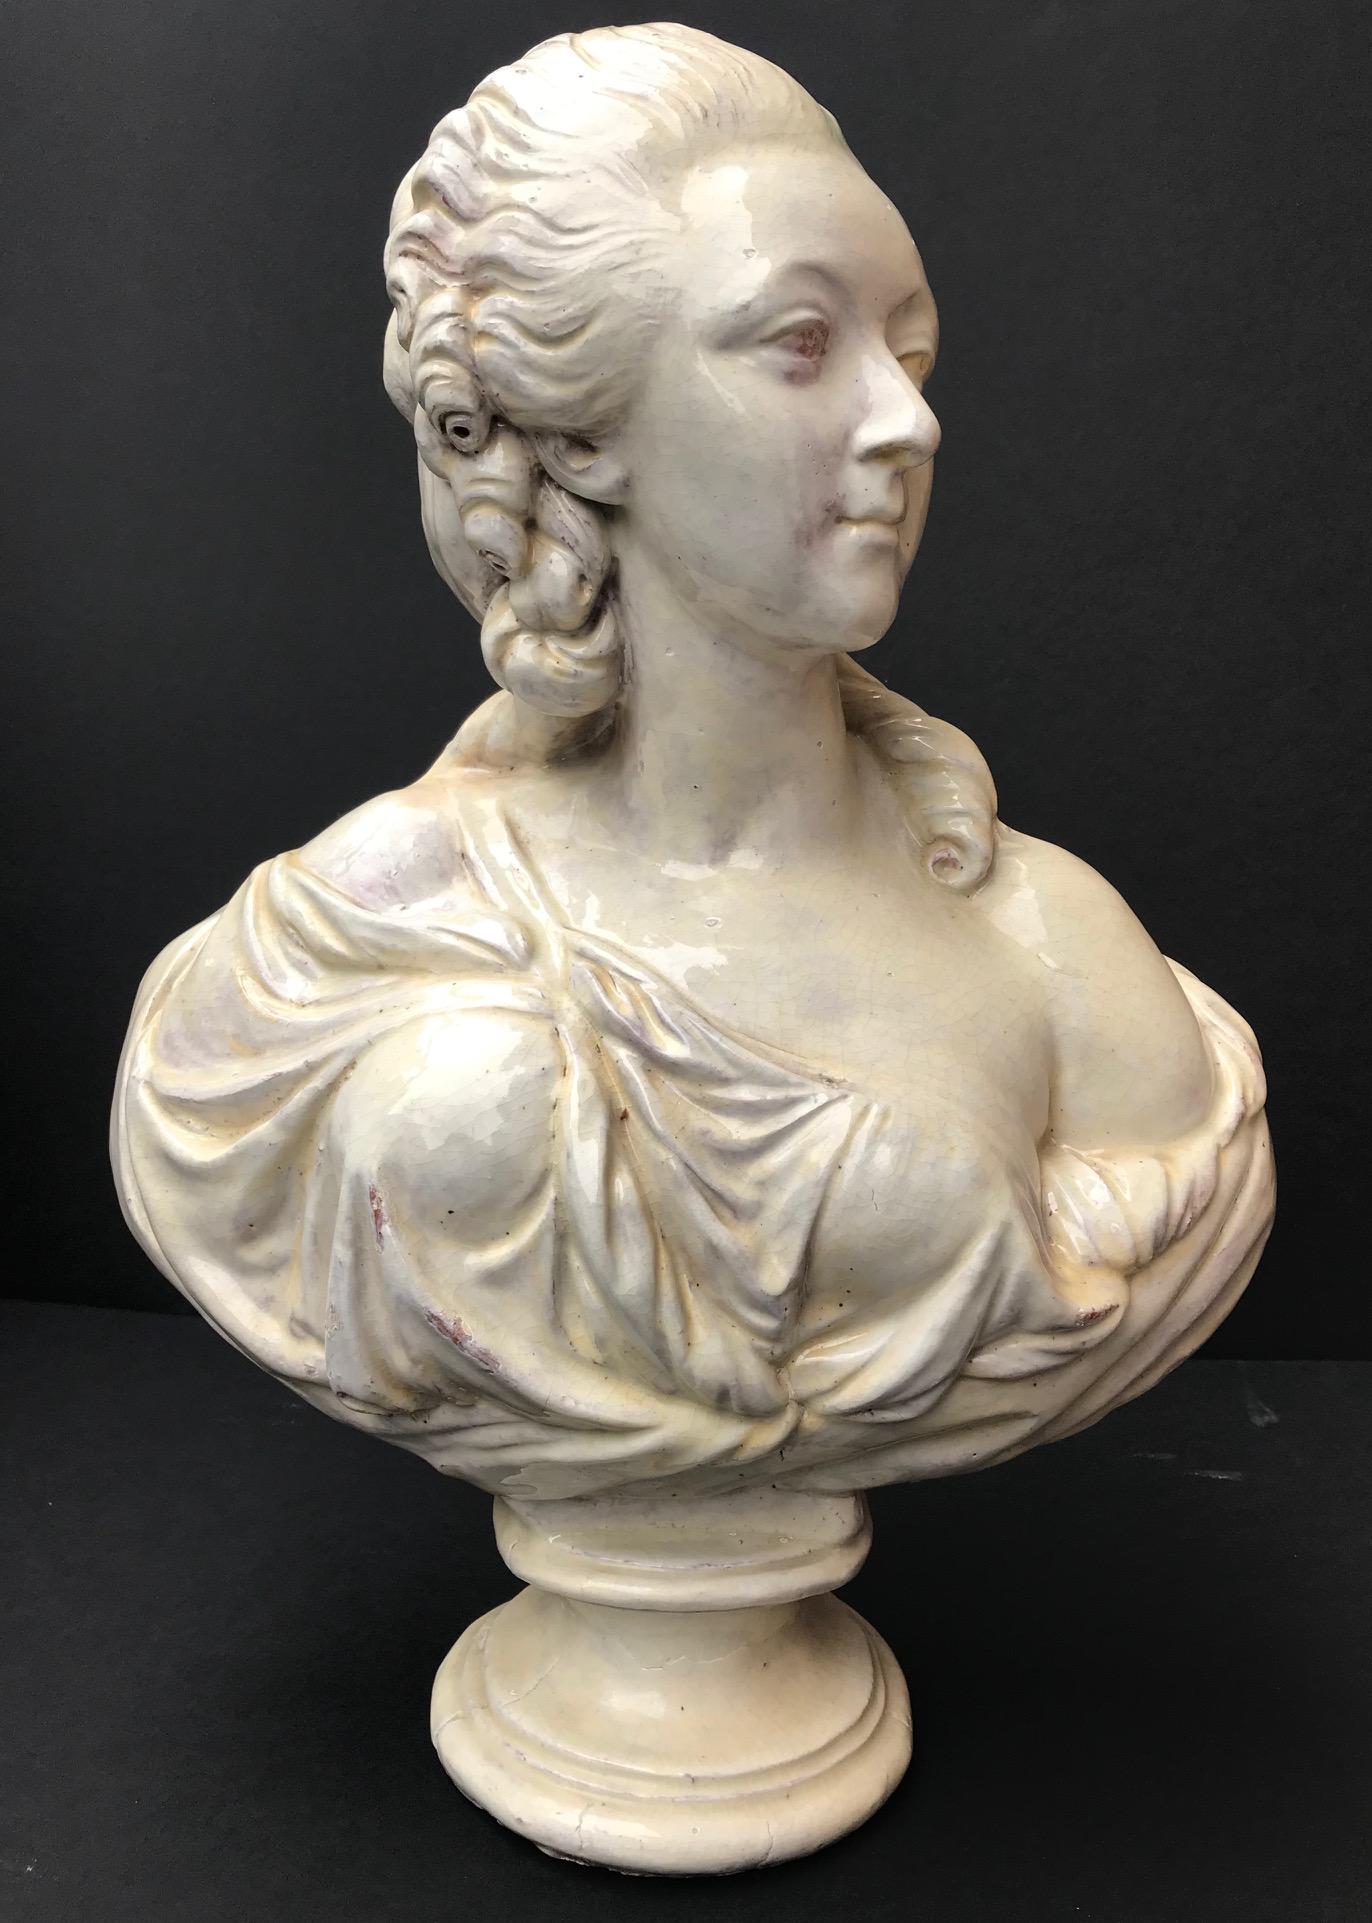 Ce grand buste, représentant la comtesse du Barry, a été réalisé d'après l'original du XVIIIe siècle par Augustin Pajou. Il fait partie de la collection du Louvre. Il était le premier sculpteur du roi Louis XV de France. Le célèbre sculpteur a